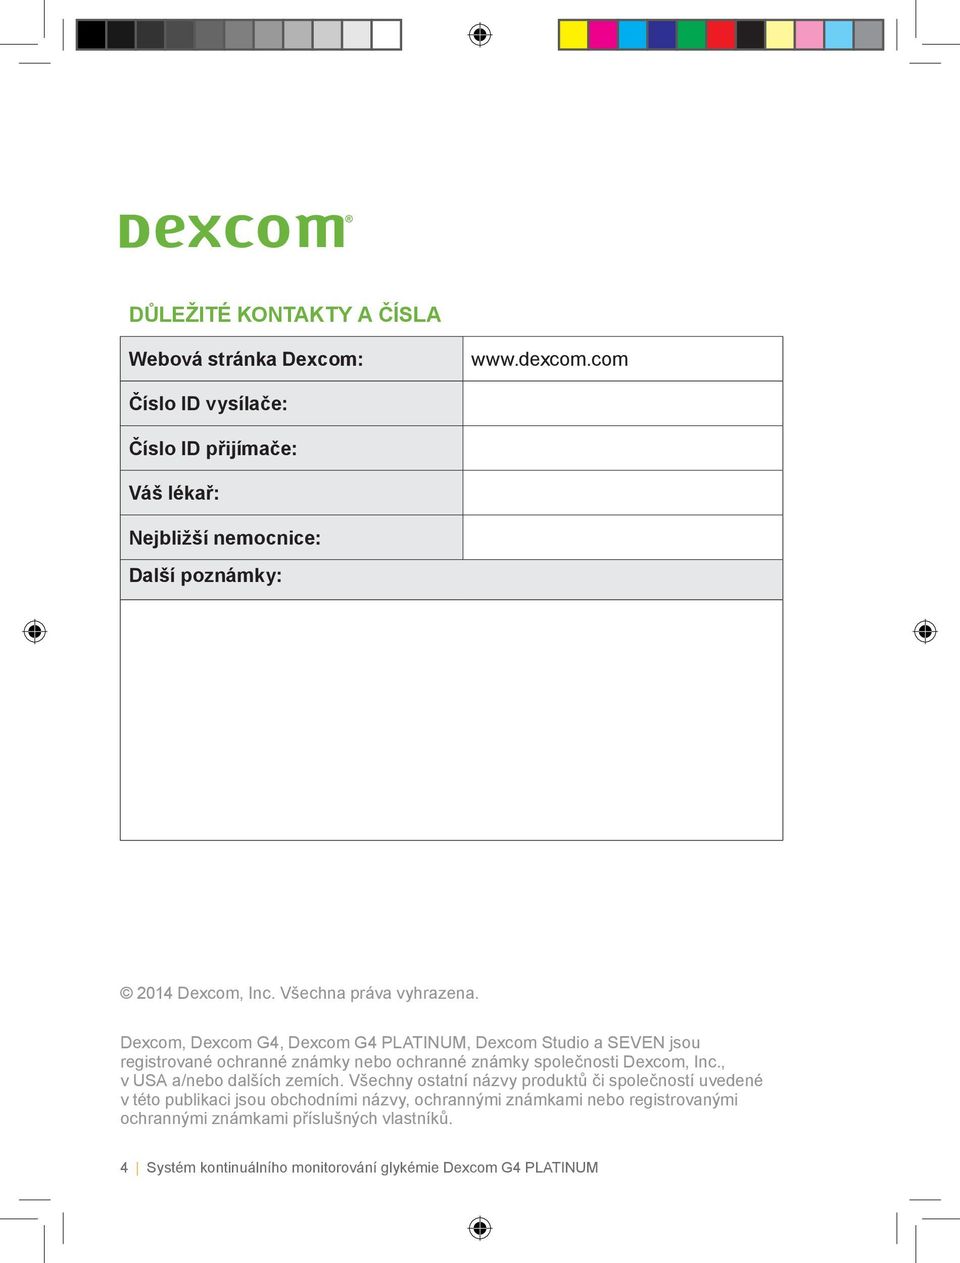 Dexcom, Dexcom G4, Dexcom G4 PLATINUM, Dexcom Studio a SEVEN jsou registrované ochranné známky nebo ochranné známky společnosti Dexcom, Inc.